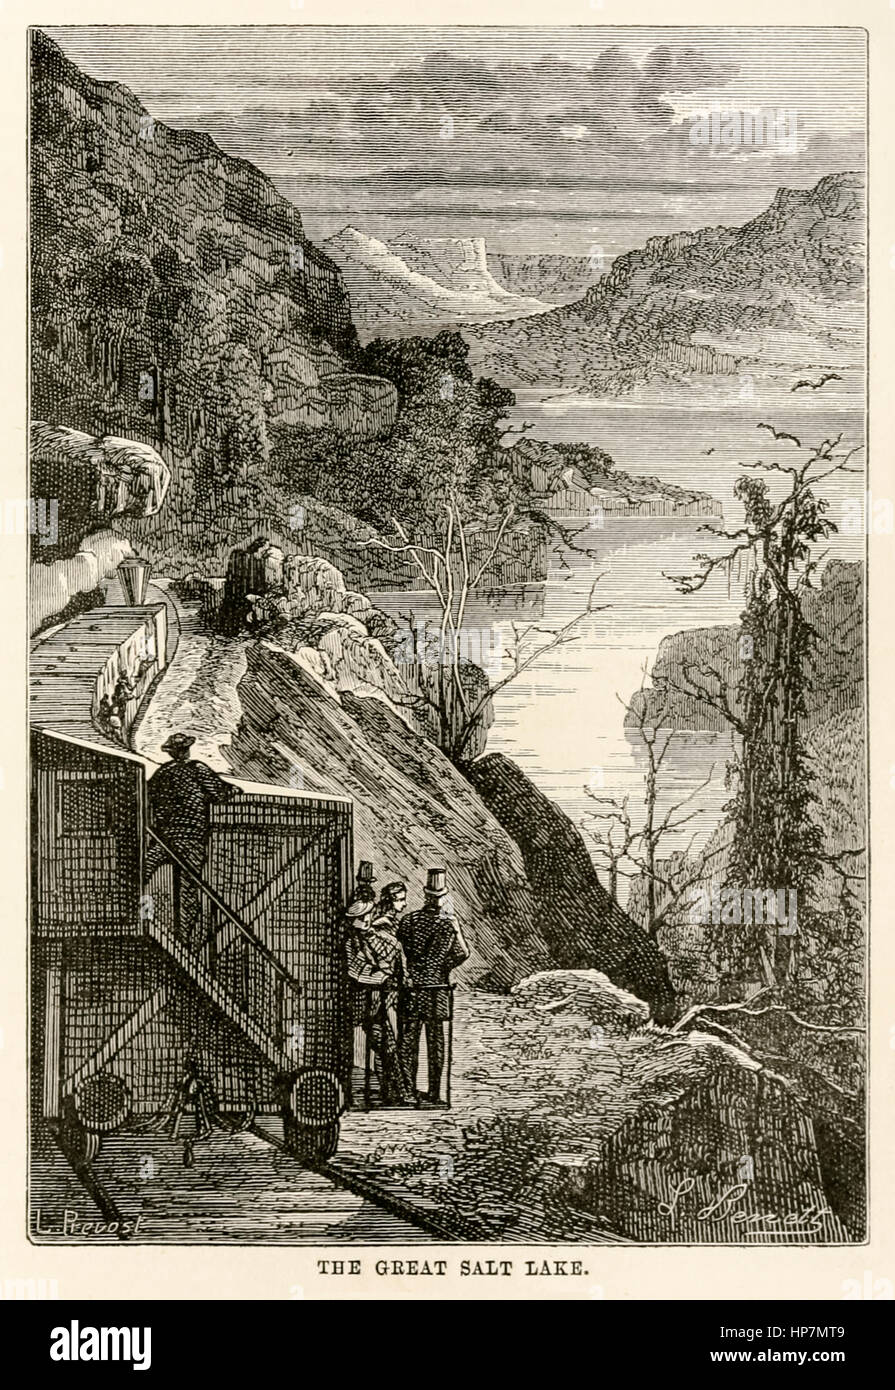 "The Great Salt Lake." von "Around the World in Eighty Days" von Jules Verne (1828-1905) veröffentlicht in 1873 Illustration von Léon Benett (1839-1917) und Gravur von Prévost. Stockfoto